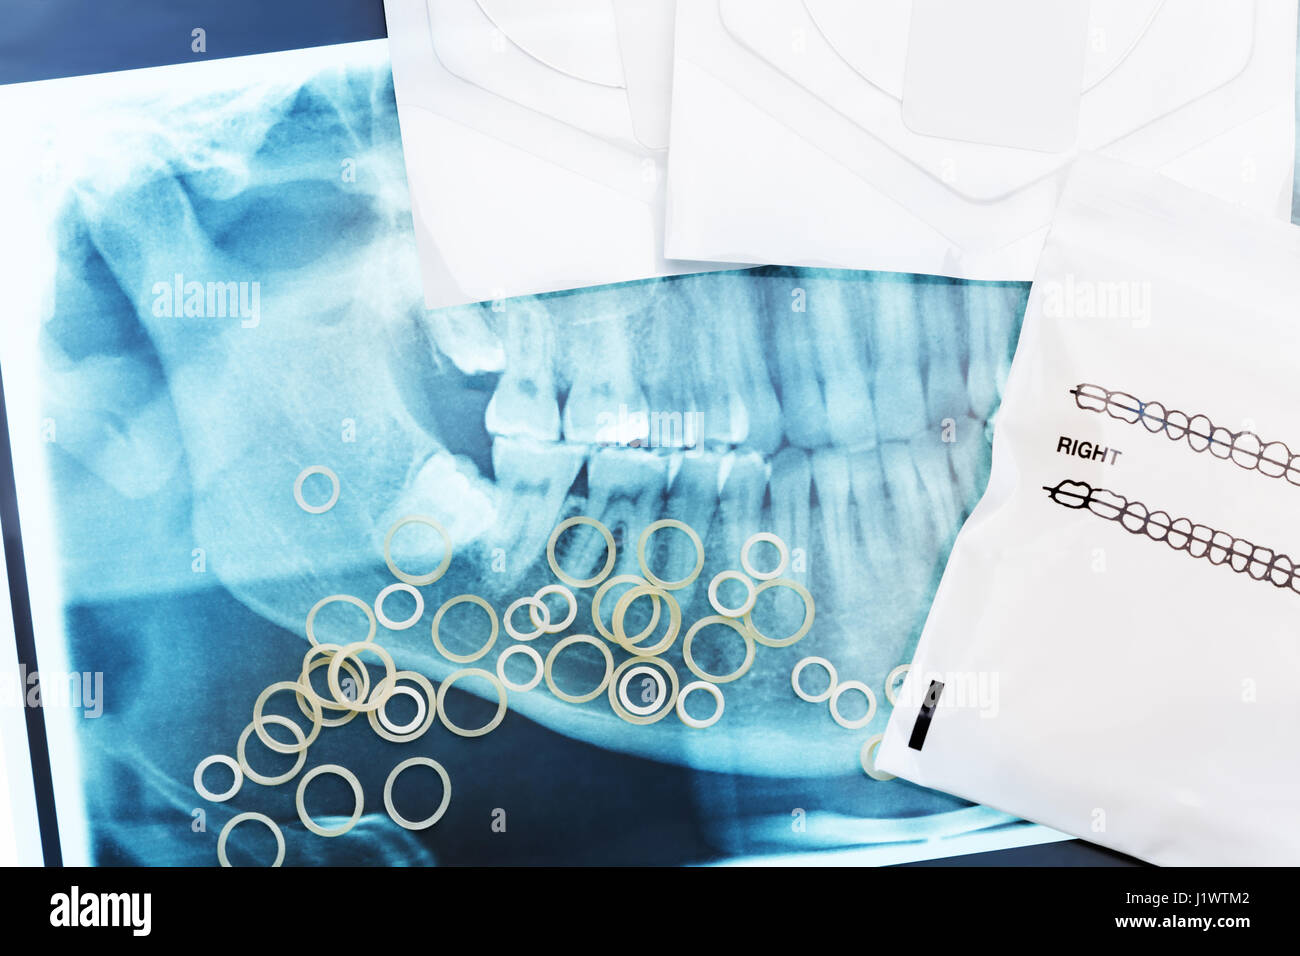 Beaucoup de cabinets dentaires dents Orthodontie accolades bagues en caoutchouc latex sur xray de mâchoires Banque D'Images